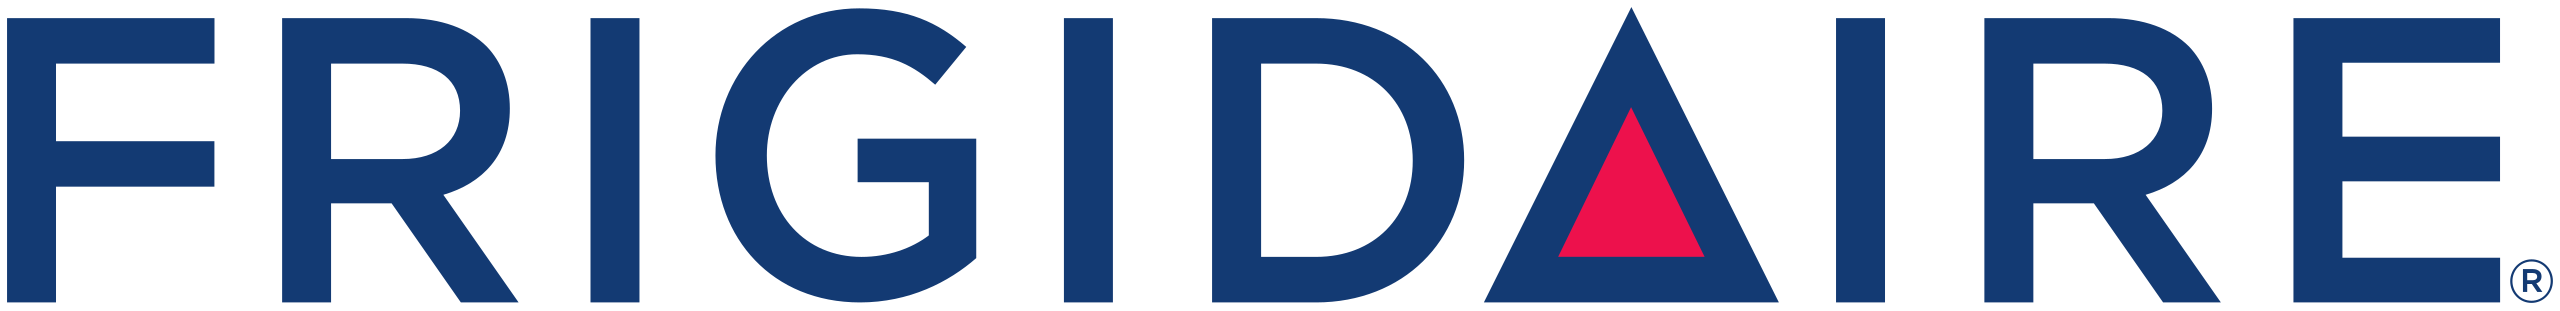 Frigidaire logo